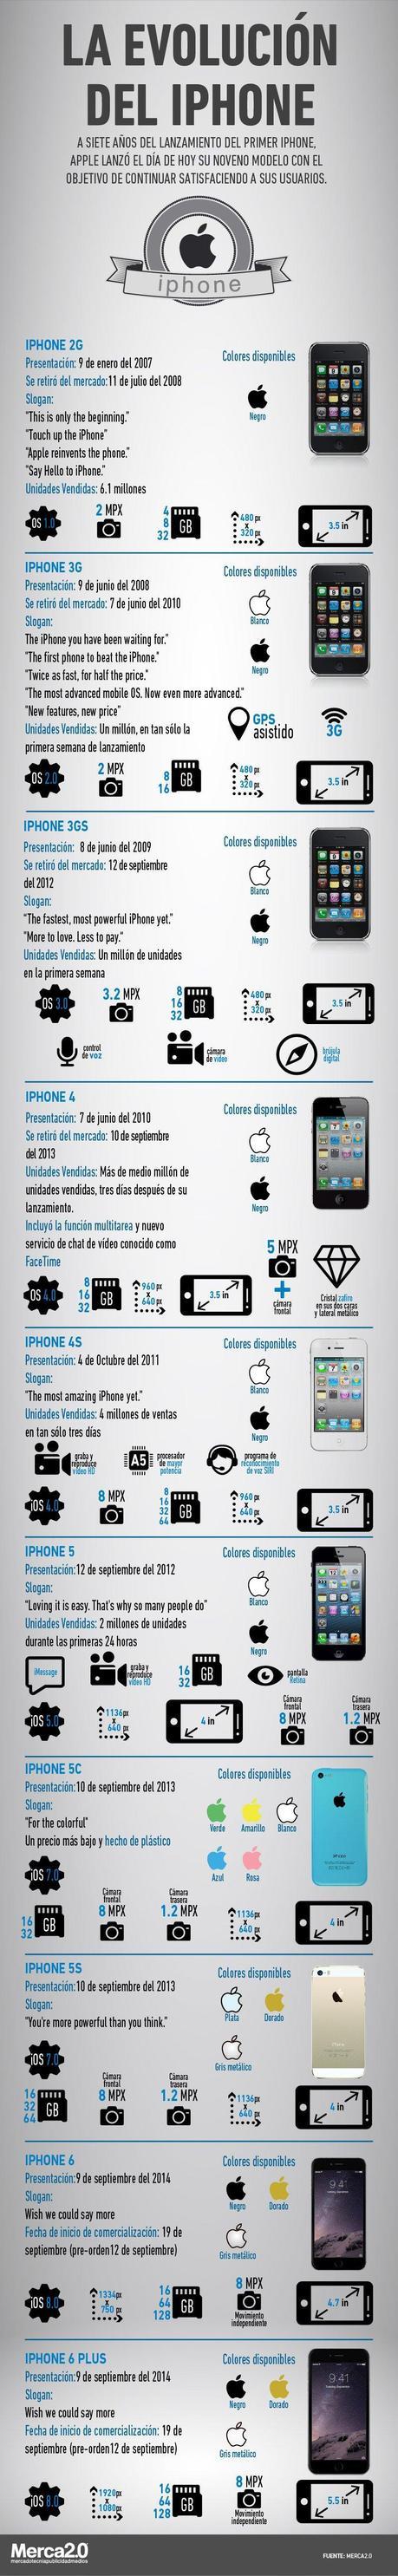 Infografía-evolución-iPhone